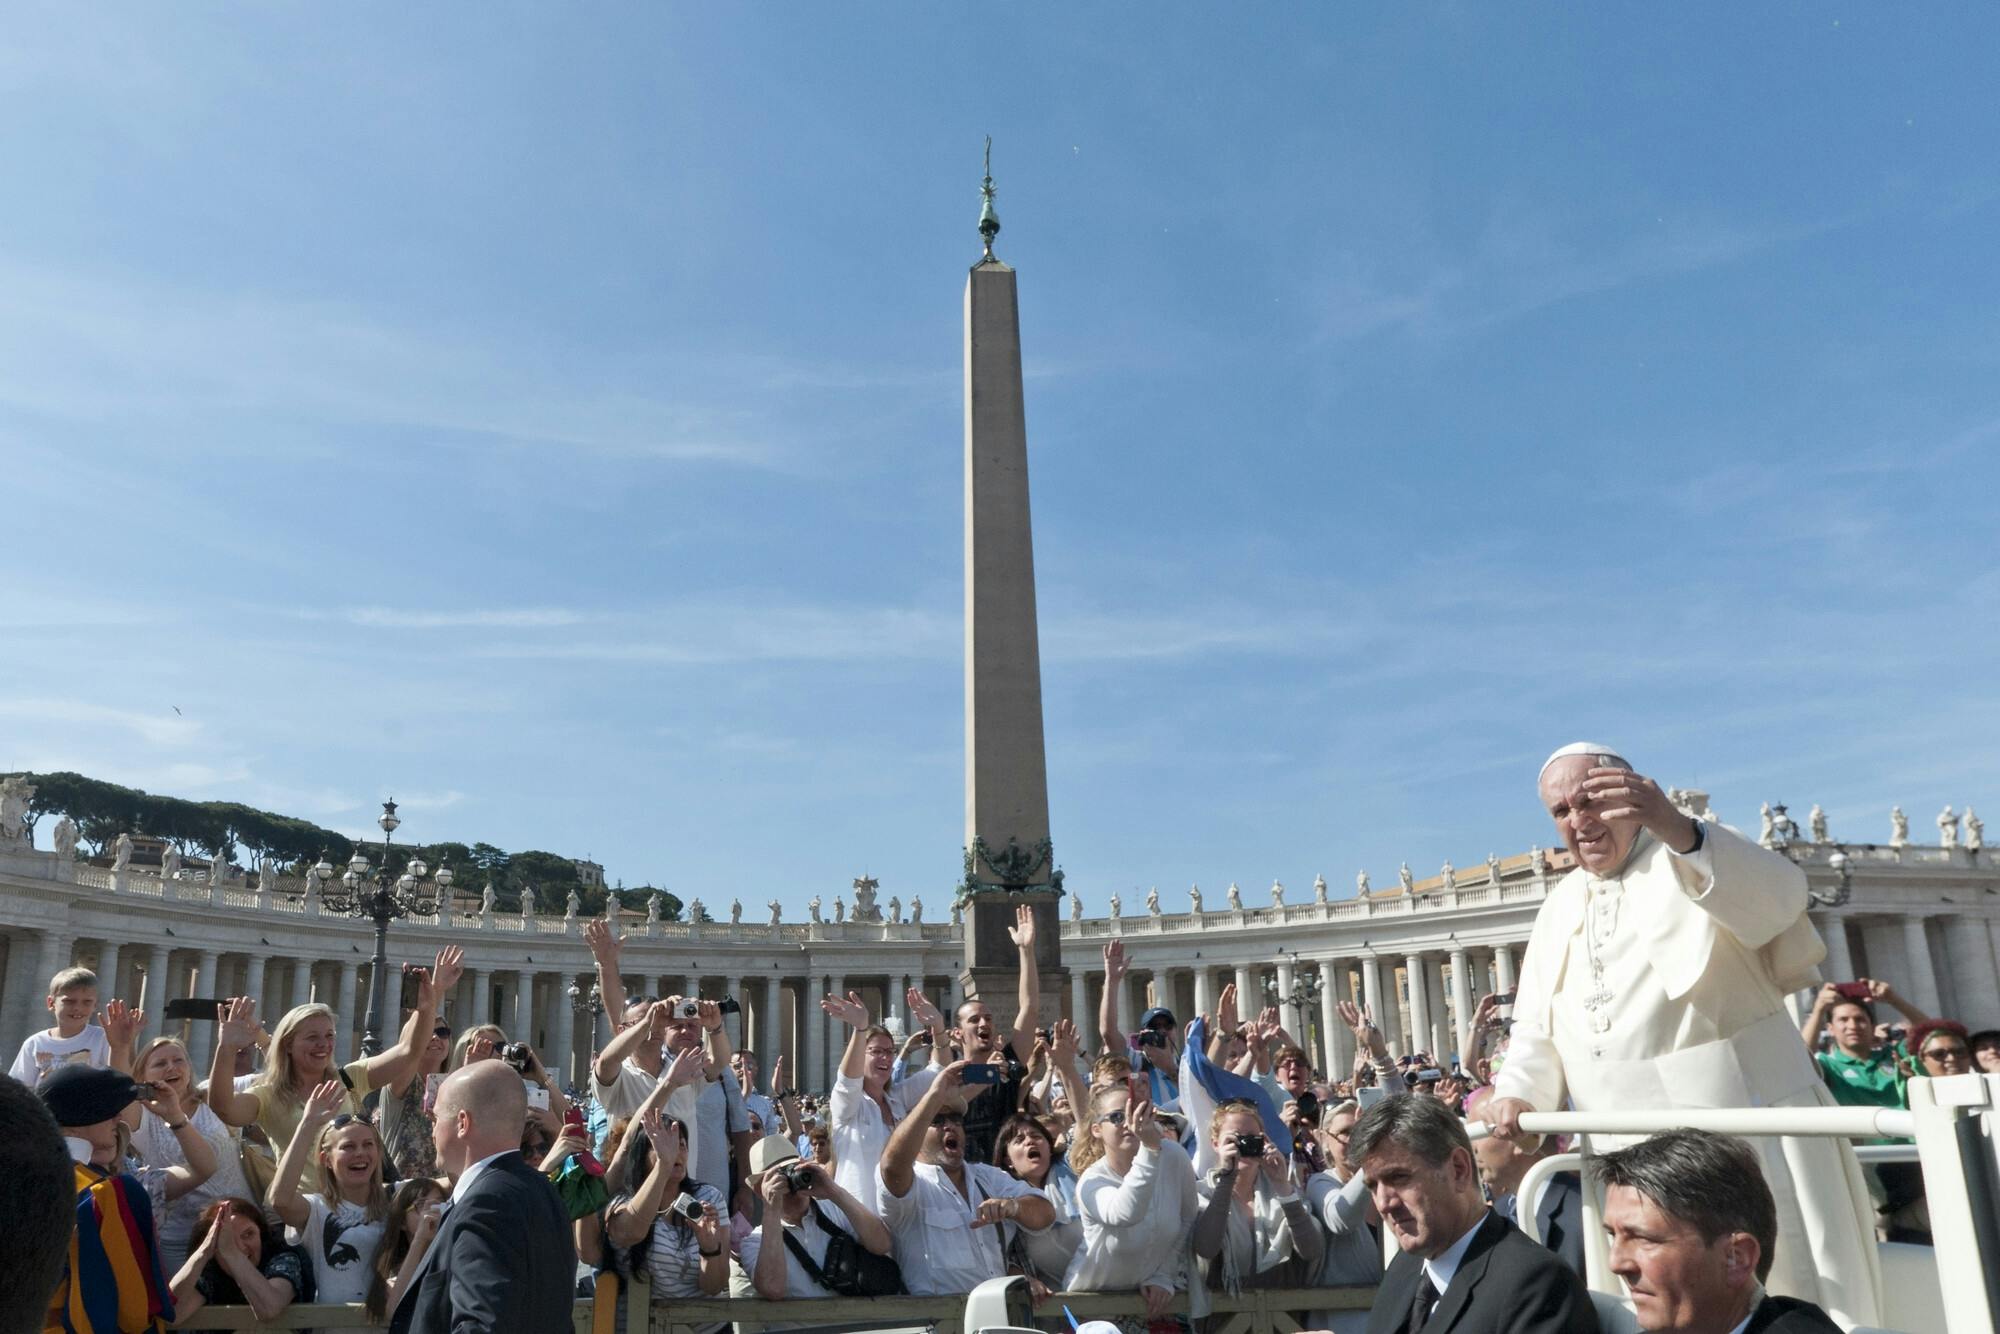 Papastaudienz mit Papst Franziskus inklusive Eintrittskarten